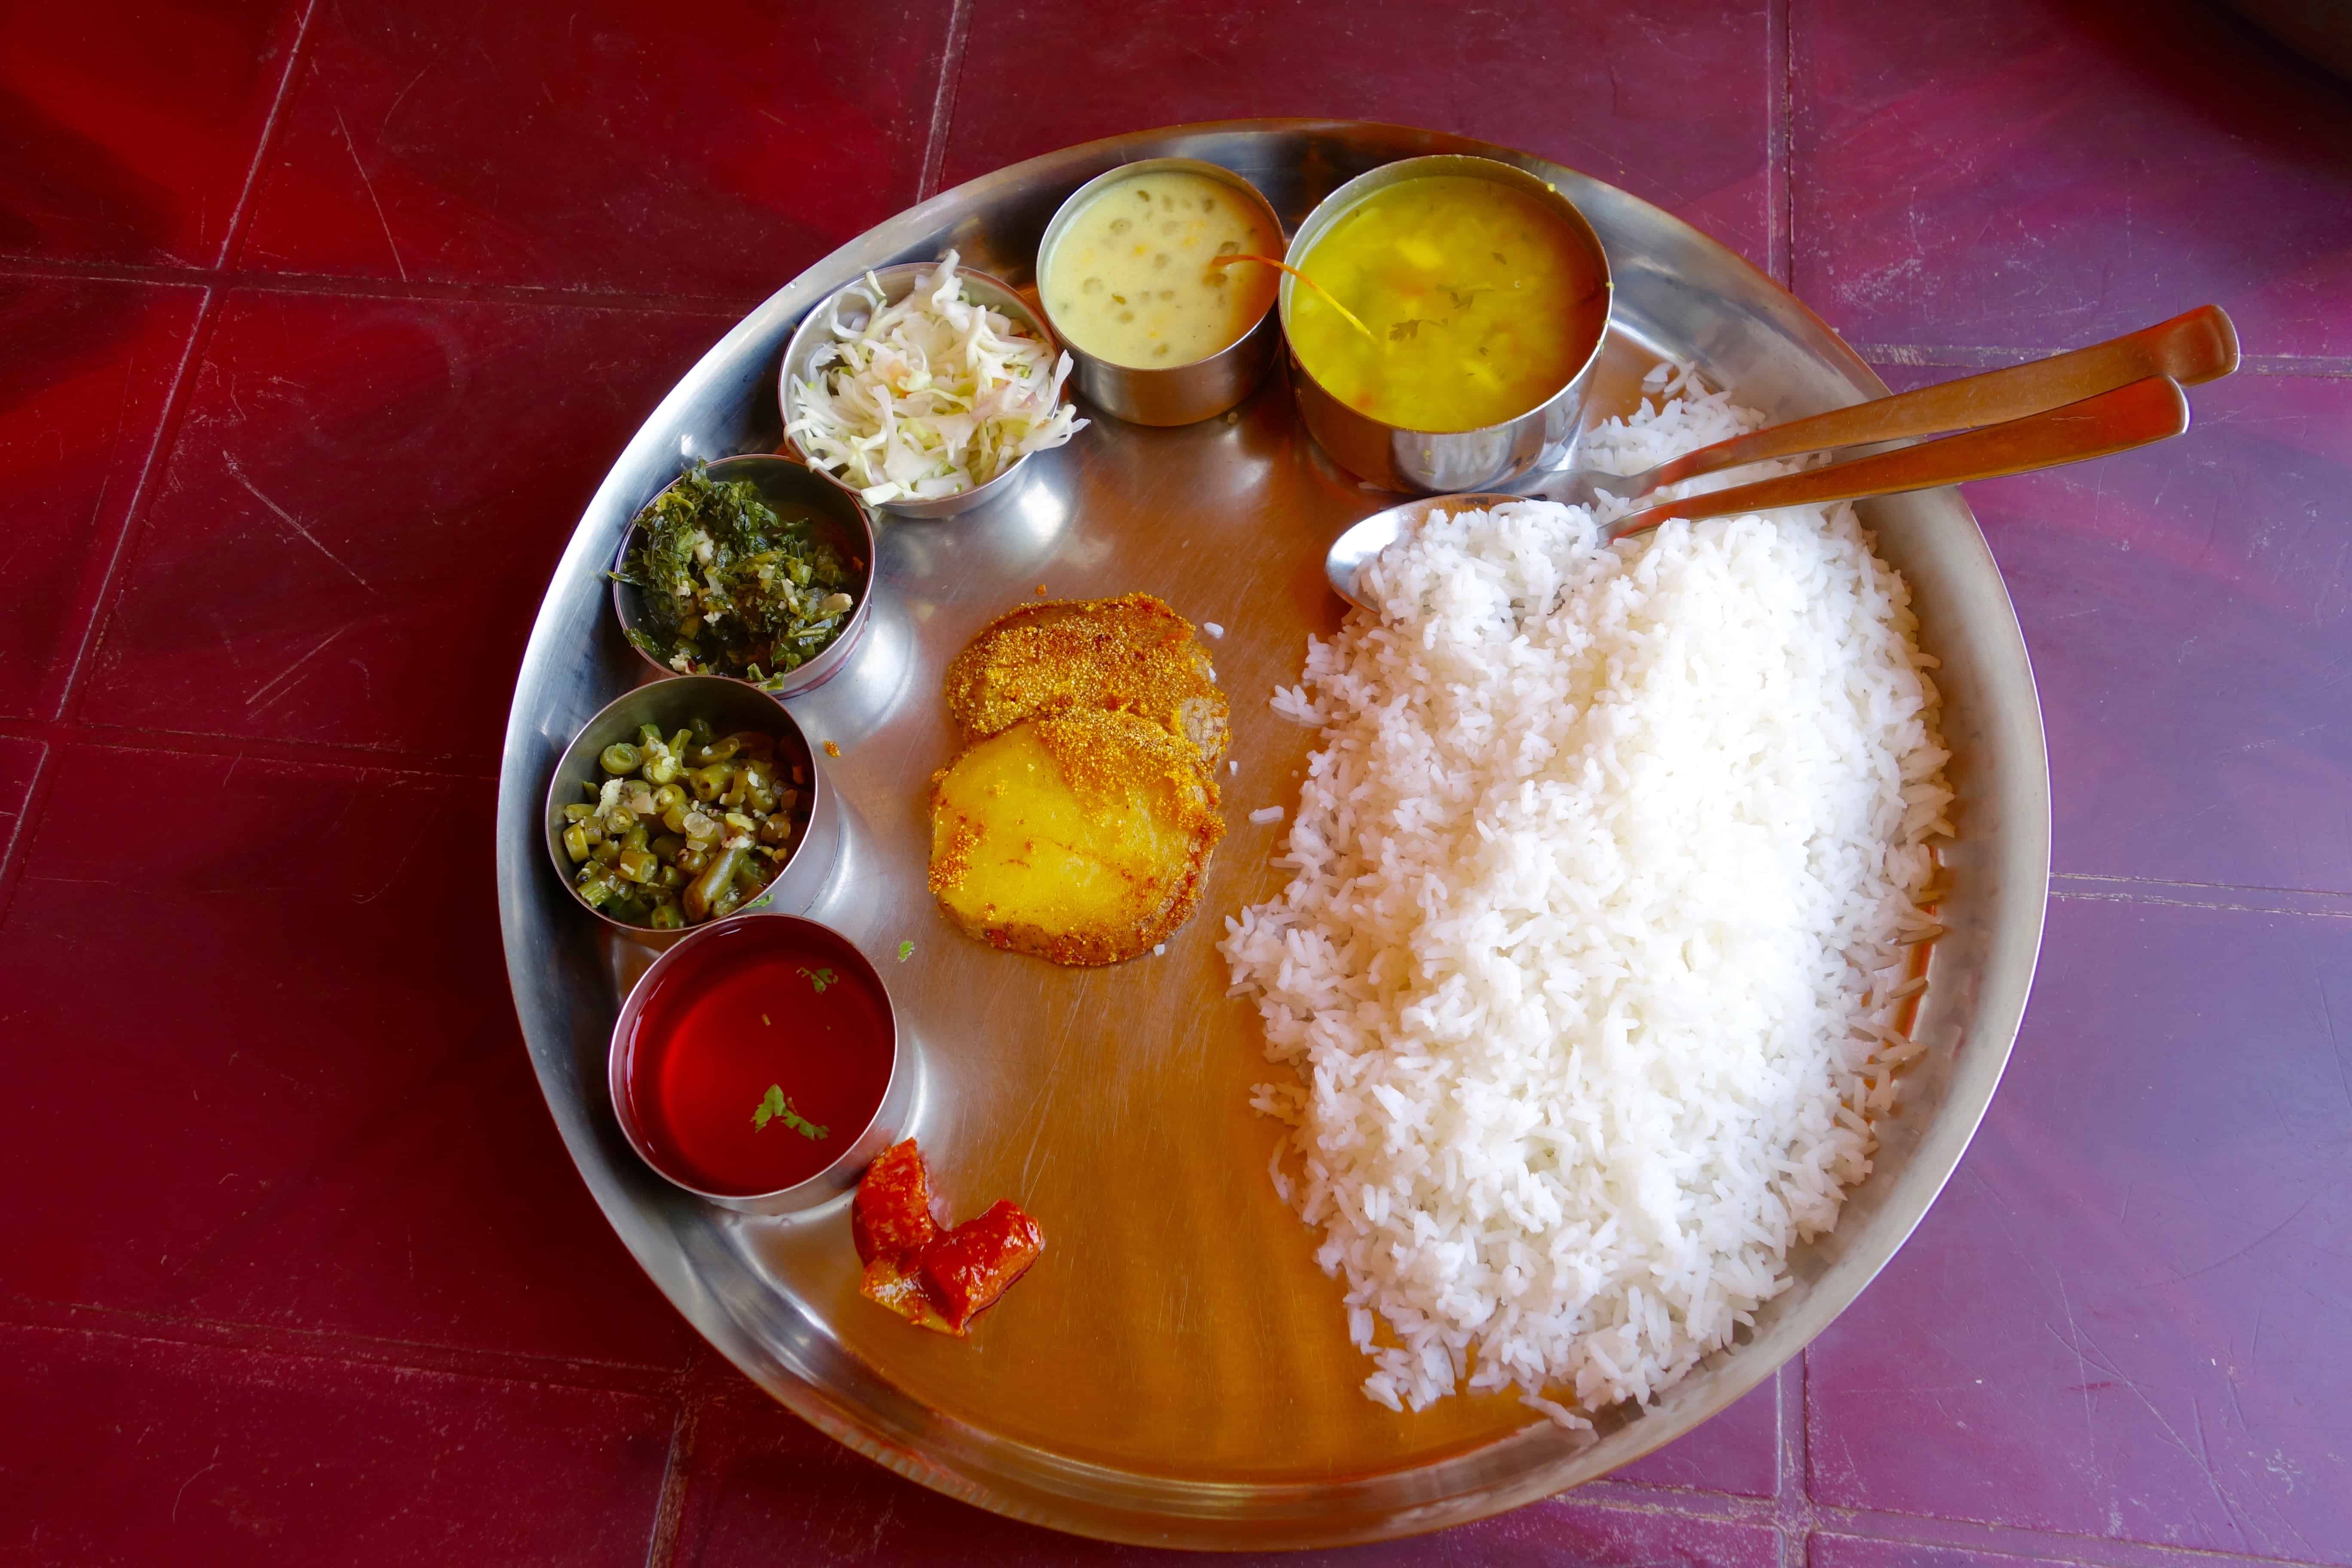 Goa vegetarian, Goa vegan, Goan food, Goan cuisine, Goa travel tips, goan thali